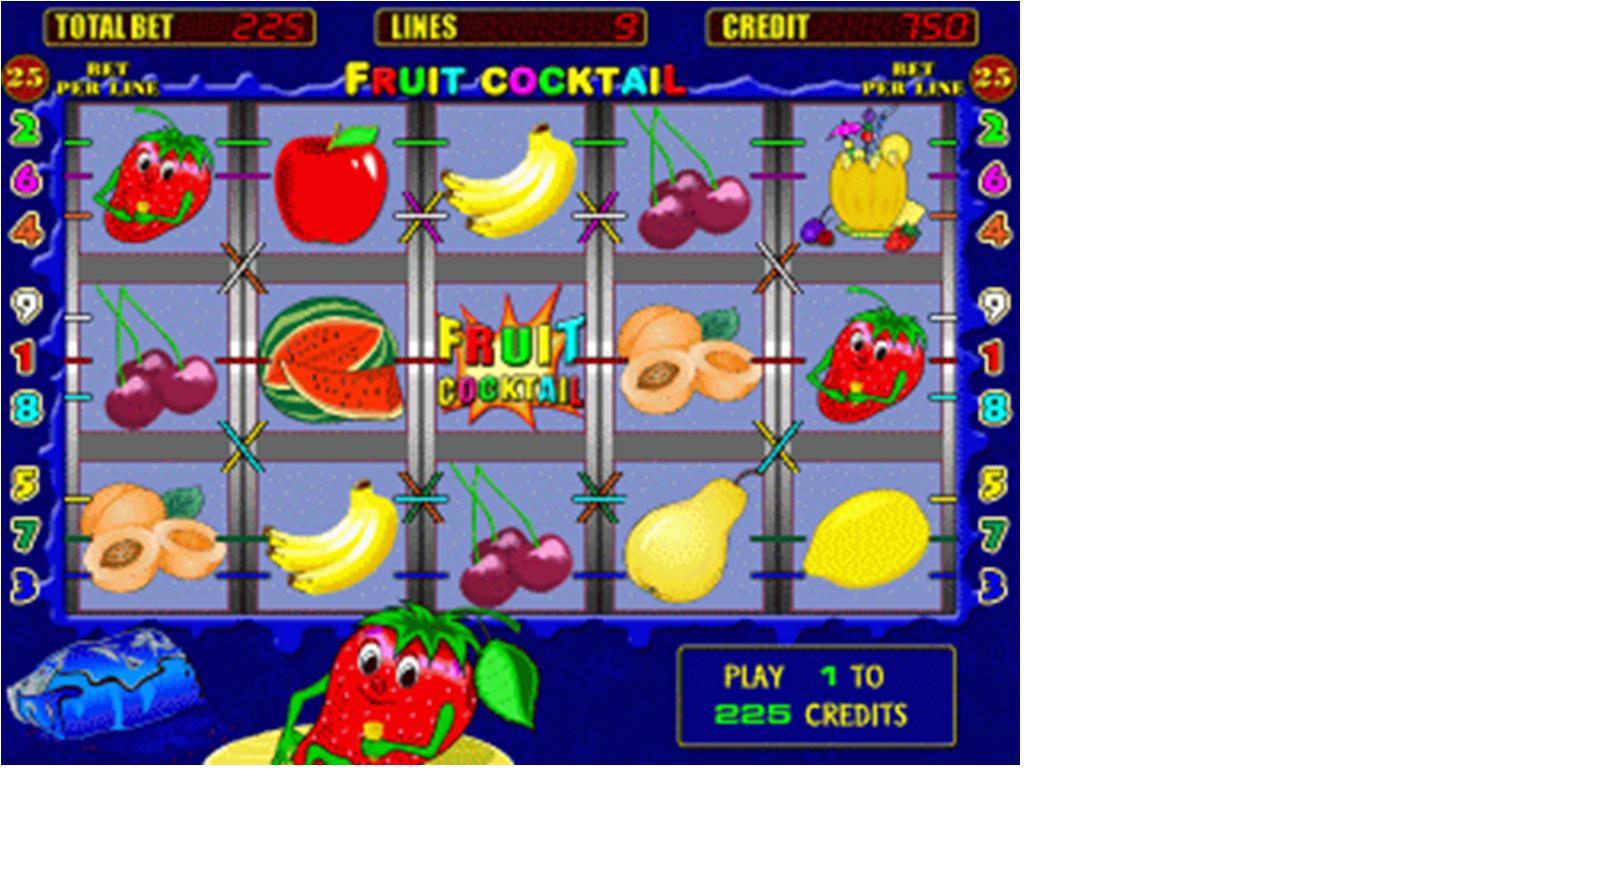 Игры онлайн демо в казино игровые автоматы играть бесплатно